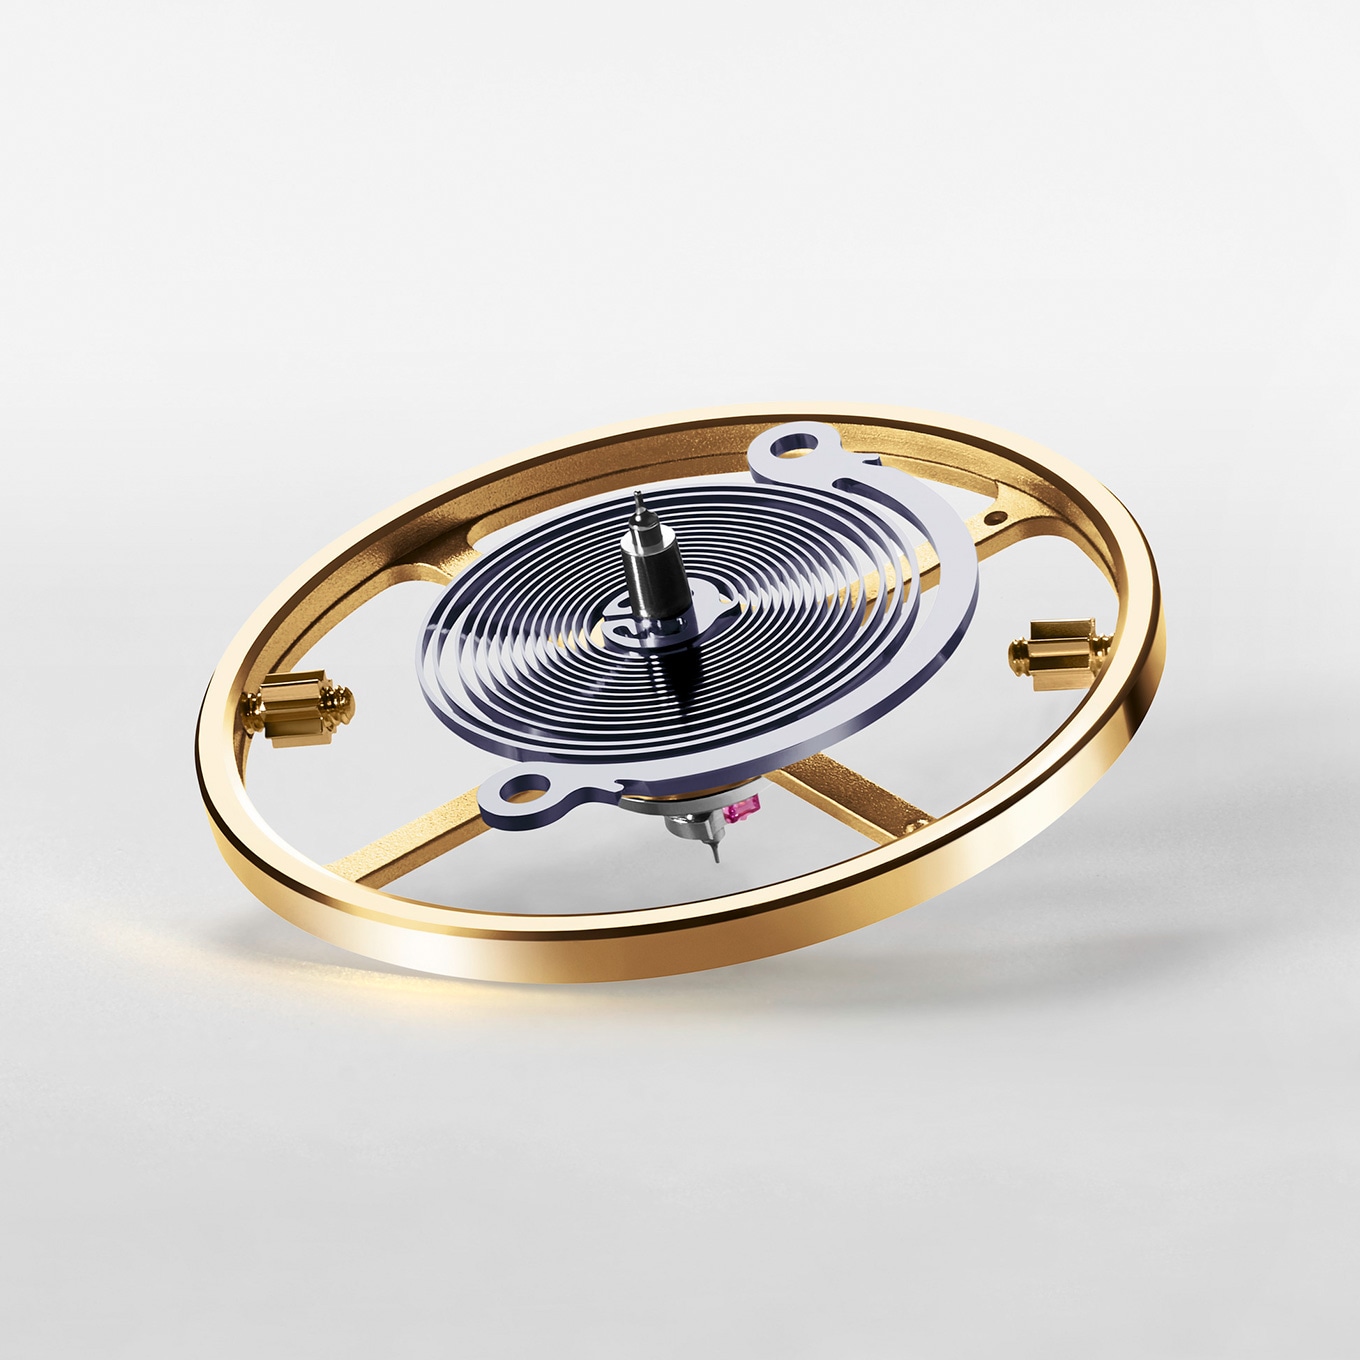 Rolex Datejust Steel & White Gold 16234Rolex Datejust Steel & White Gold 41mm Watch